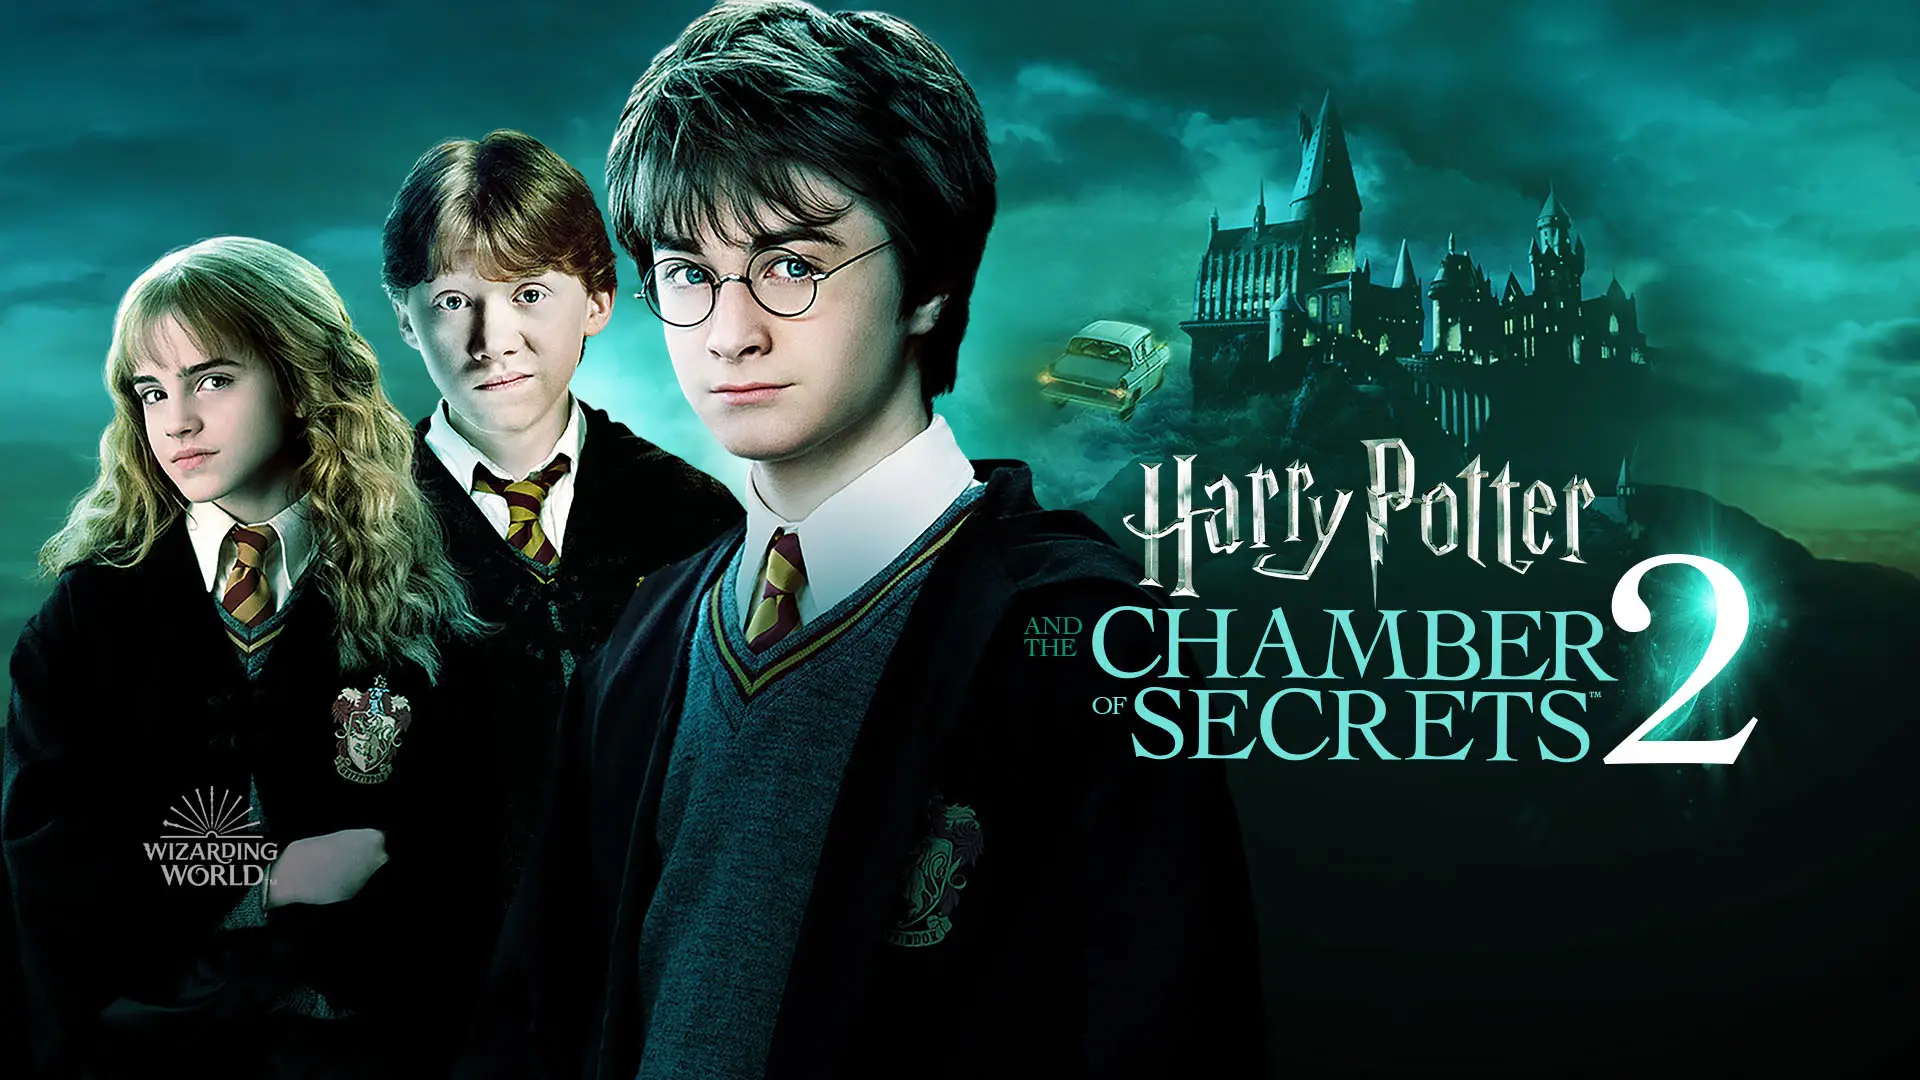 แฮร์รี่ พอตเตอร์กับห้องแห่งความลับ